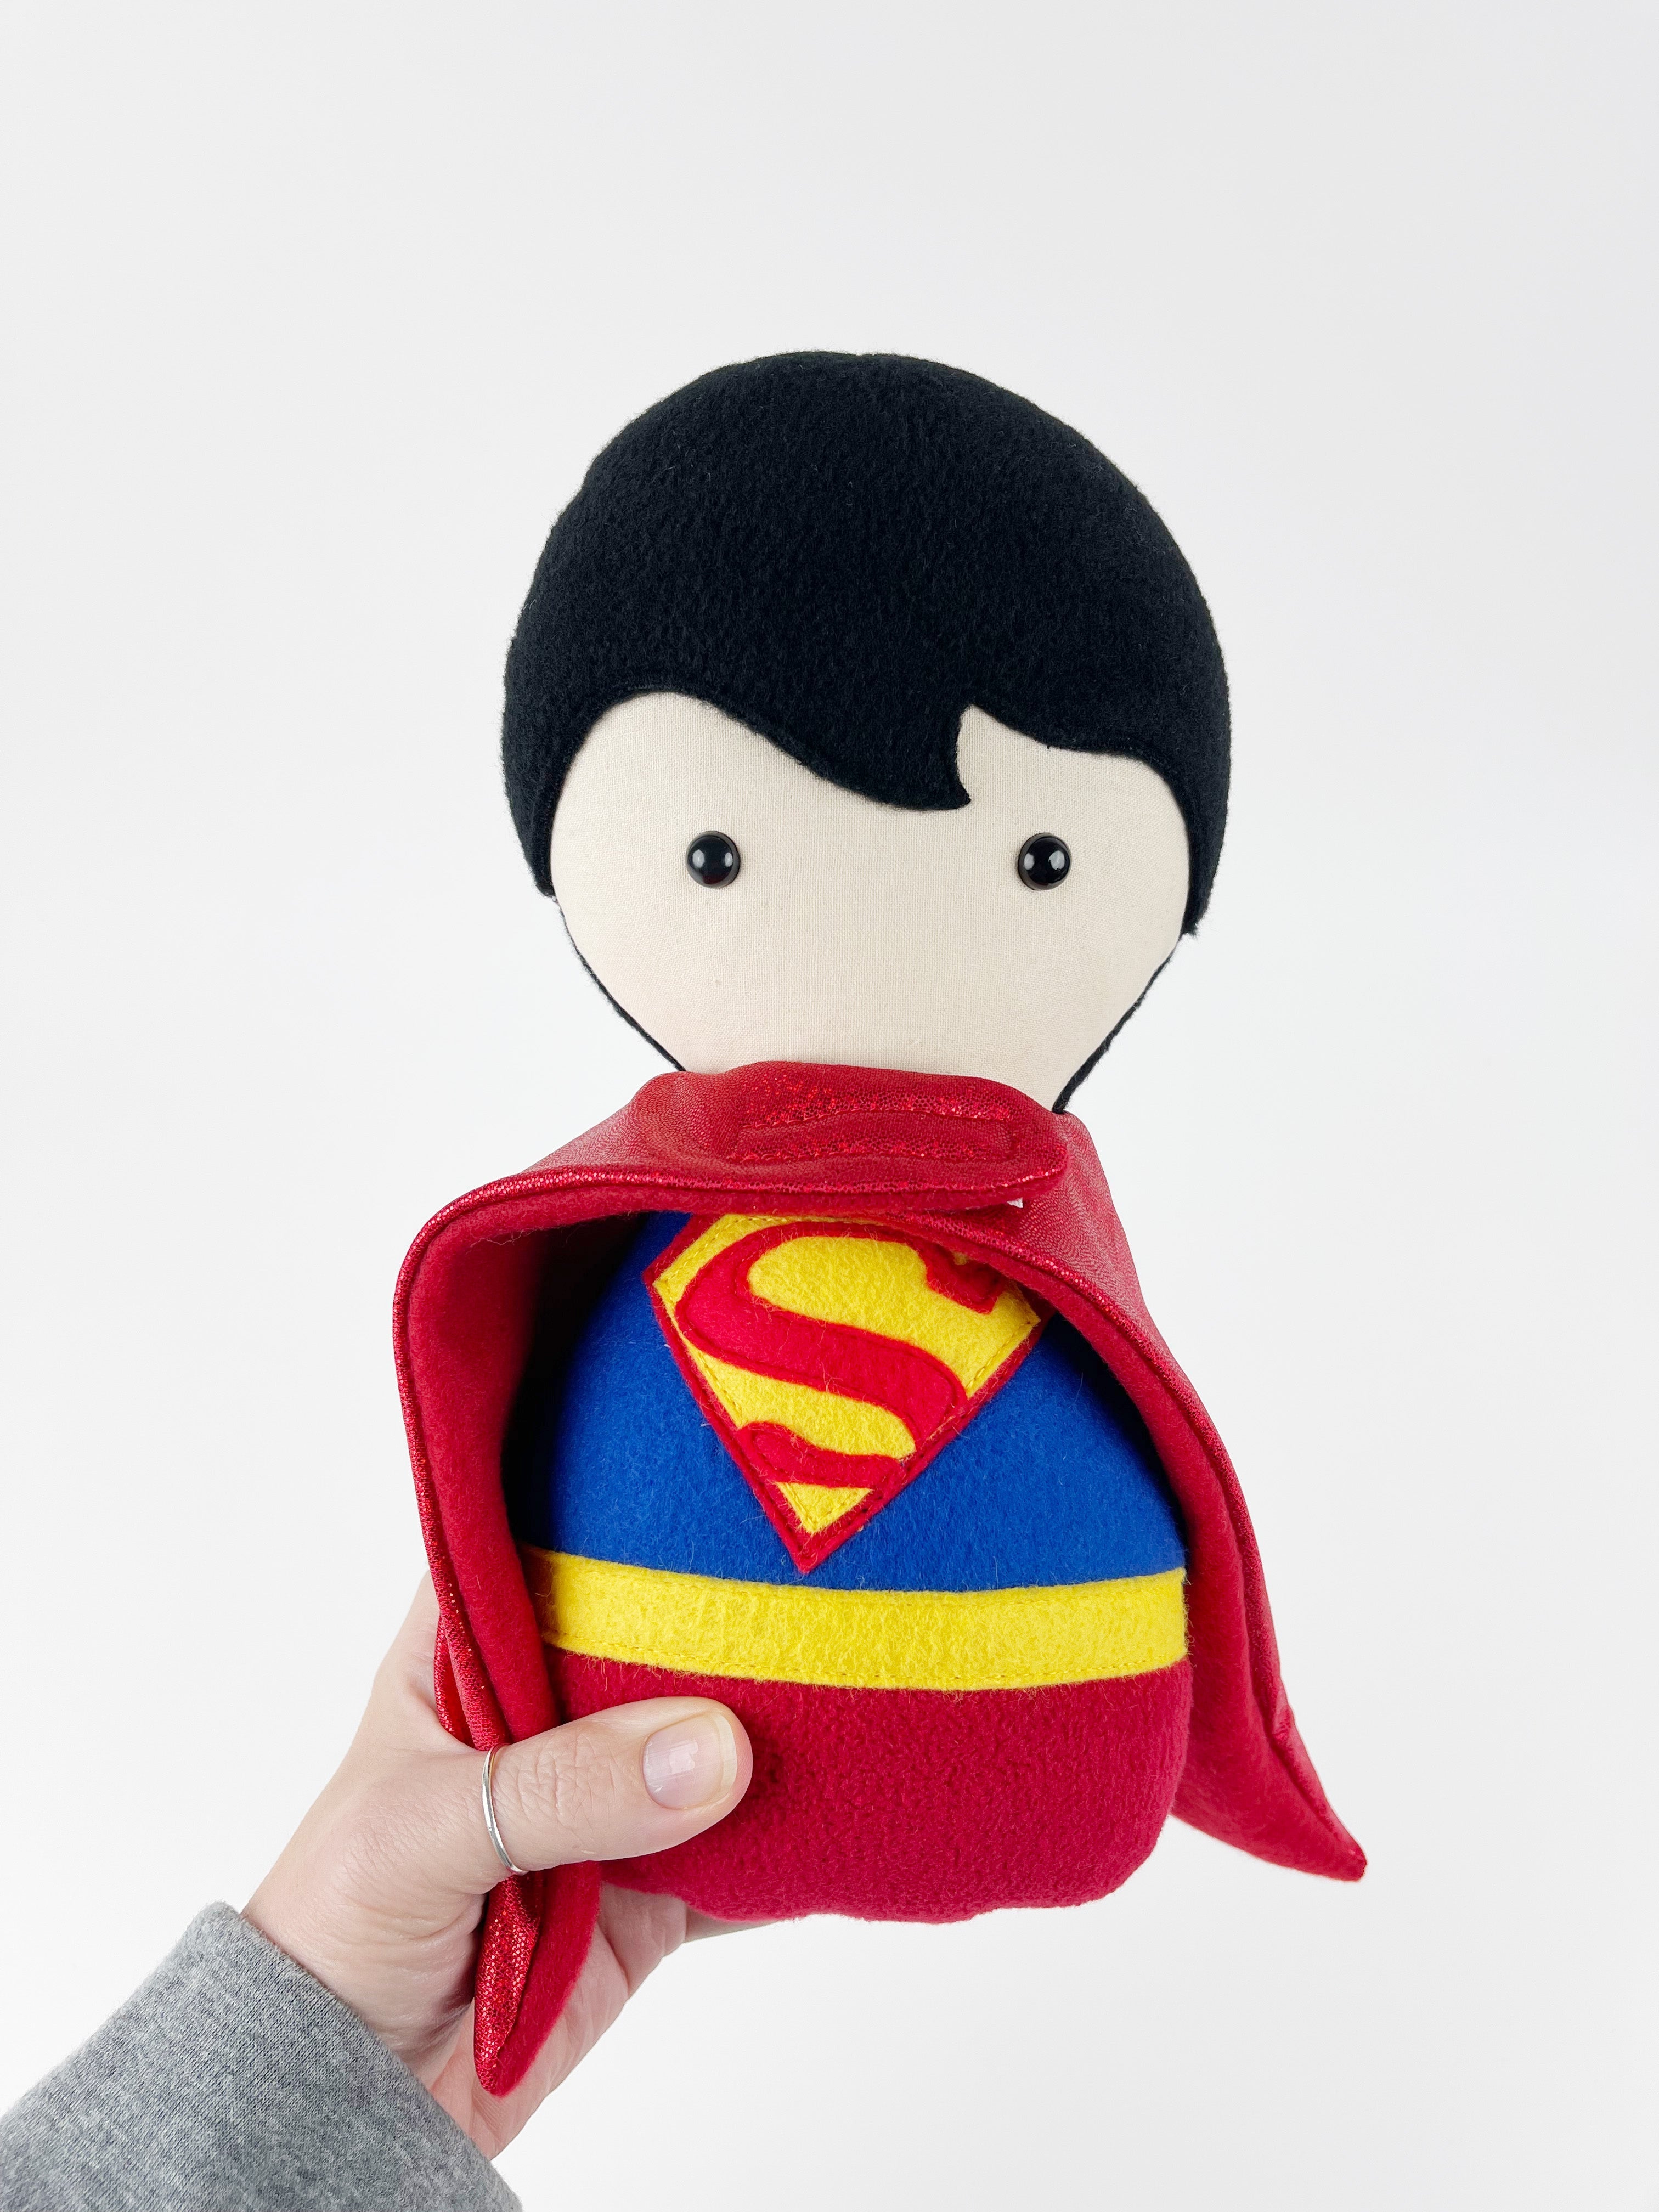 Cuddle Doll Soft doll toy - Superman